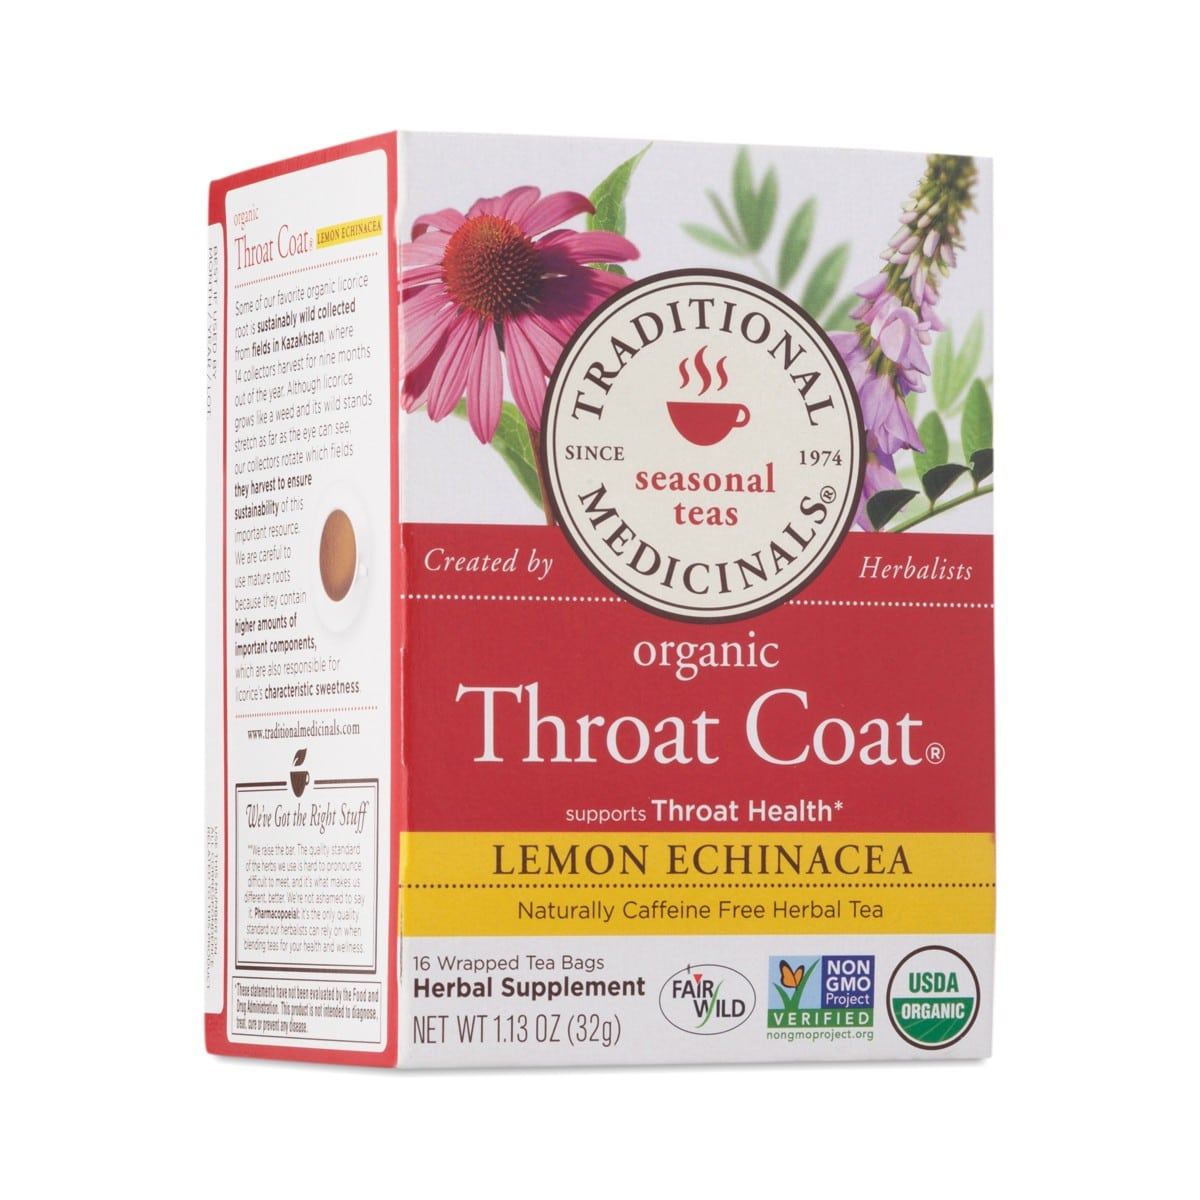 Traditional Medicinals Throat Coat® Lemon Echinacea Herbal Tea